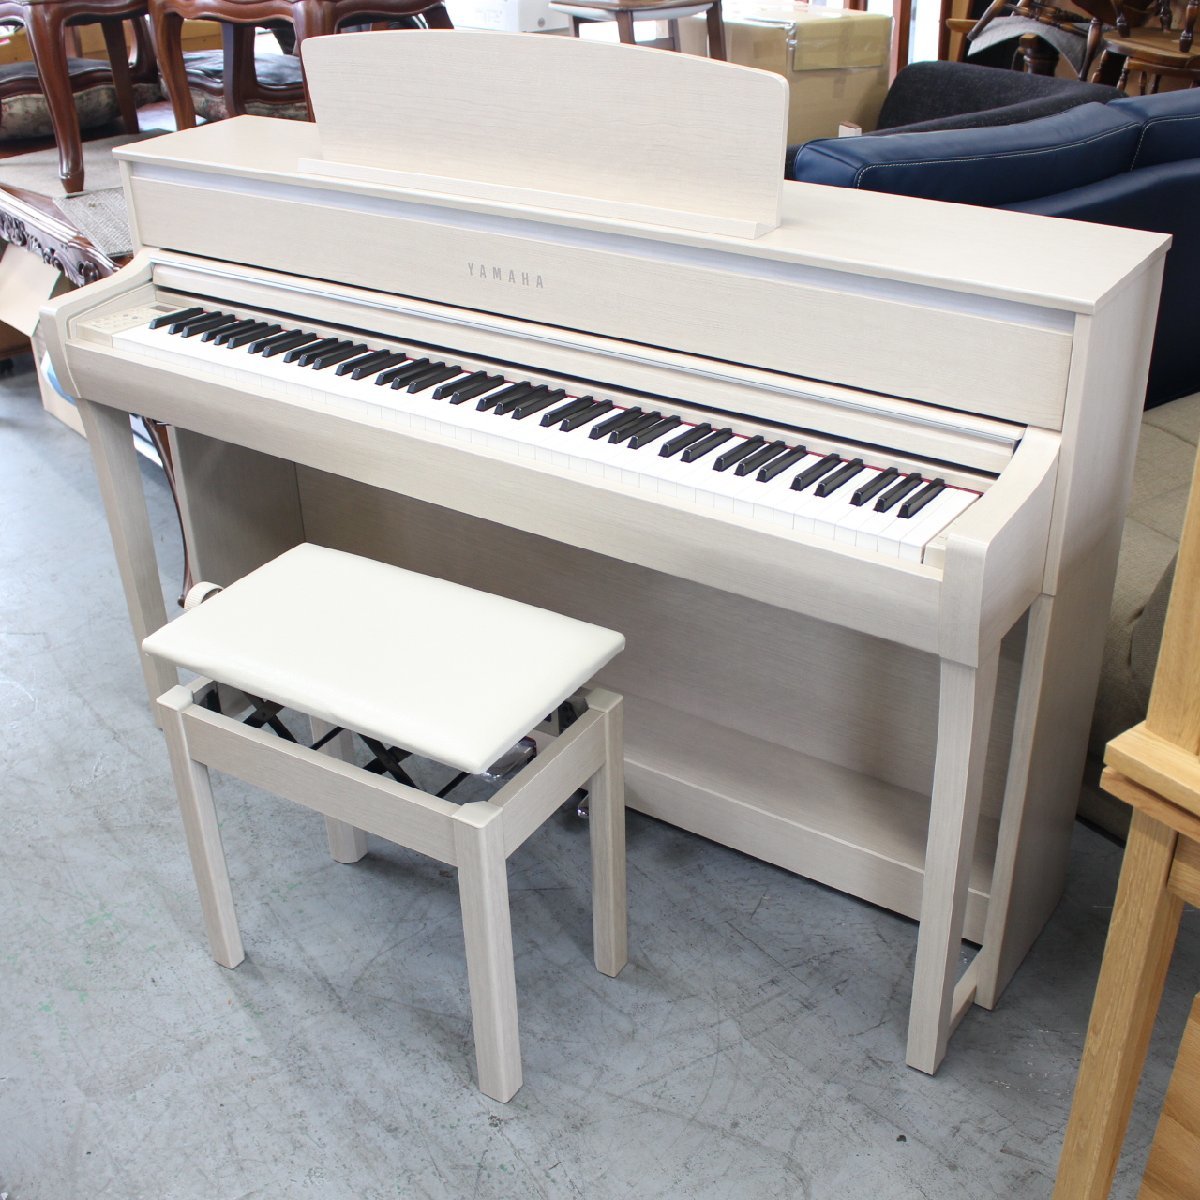 横浜市青葉区にて ヤマハ 電子ピアノ CLP-675WA 2017年製 を出張買取させて頂きました。